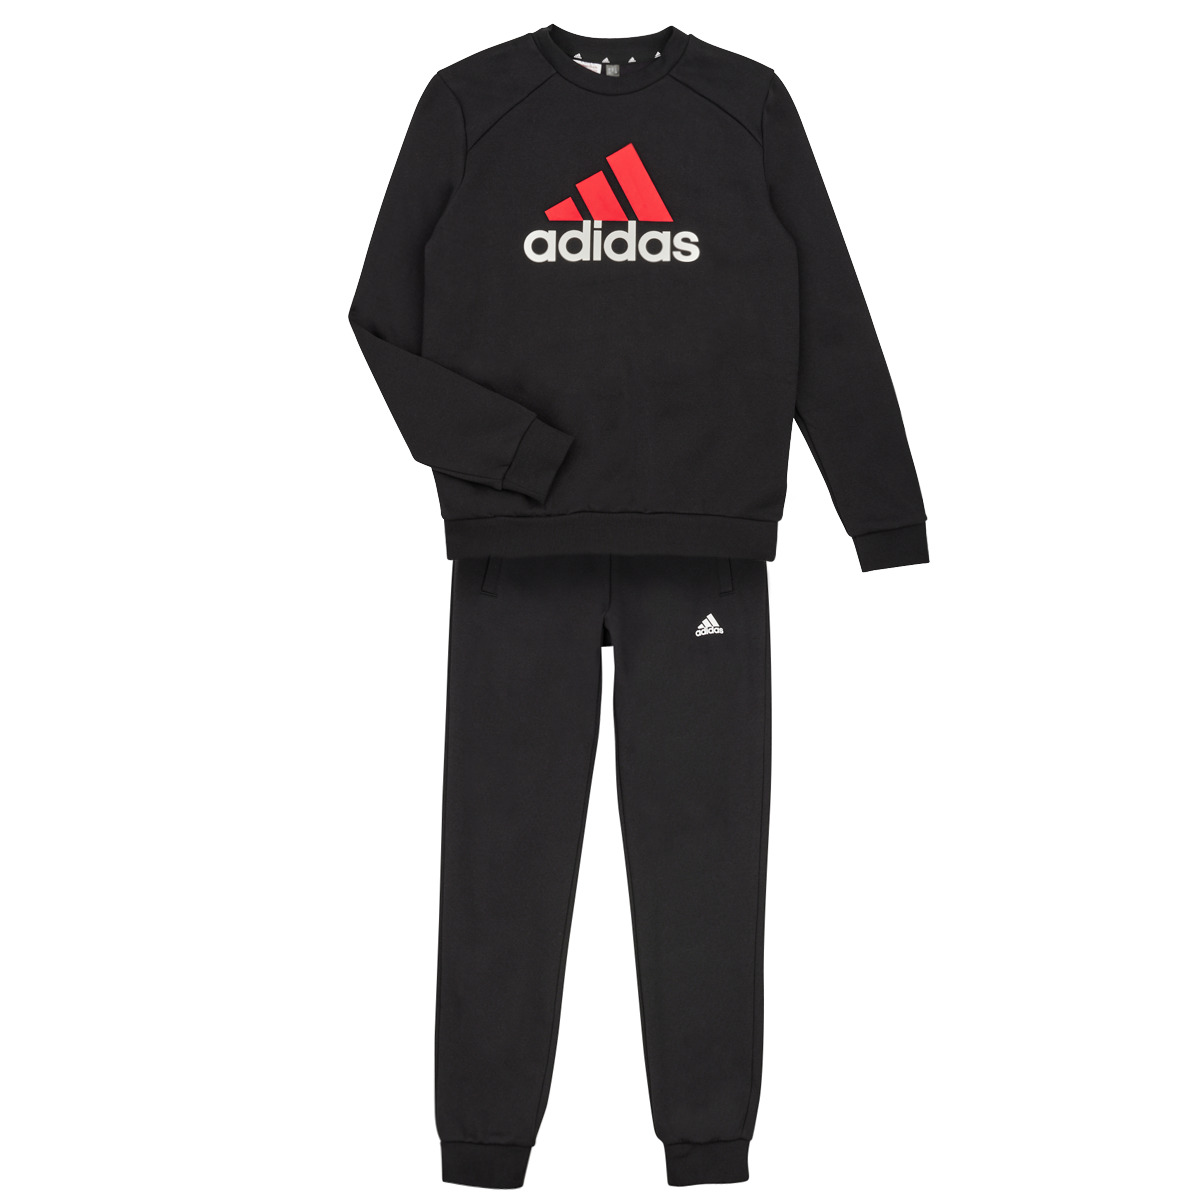 Adidas Sportswear Noir / Rouge / Blanc BL FL TS 2S7cThI